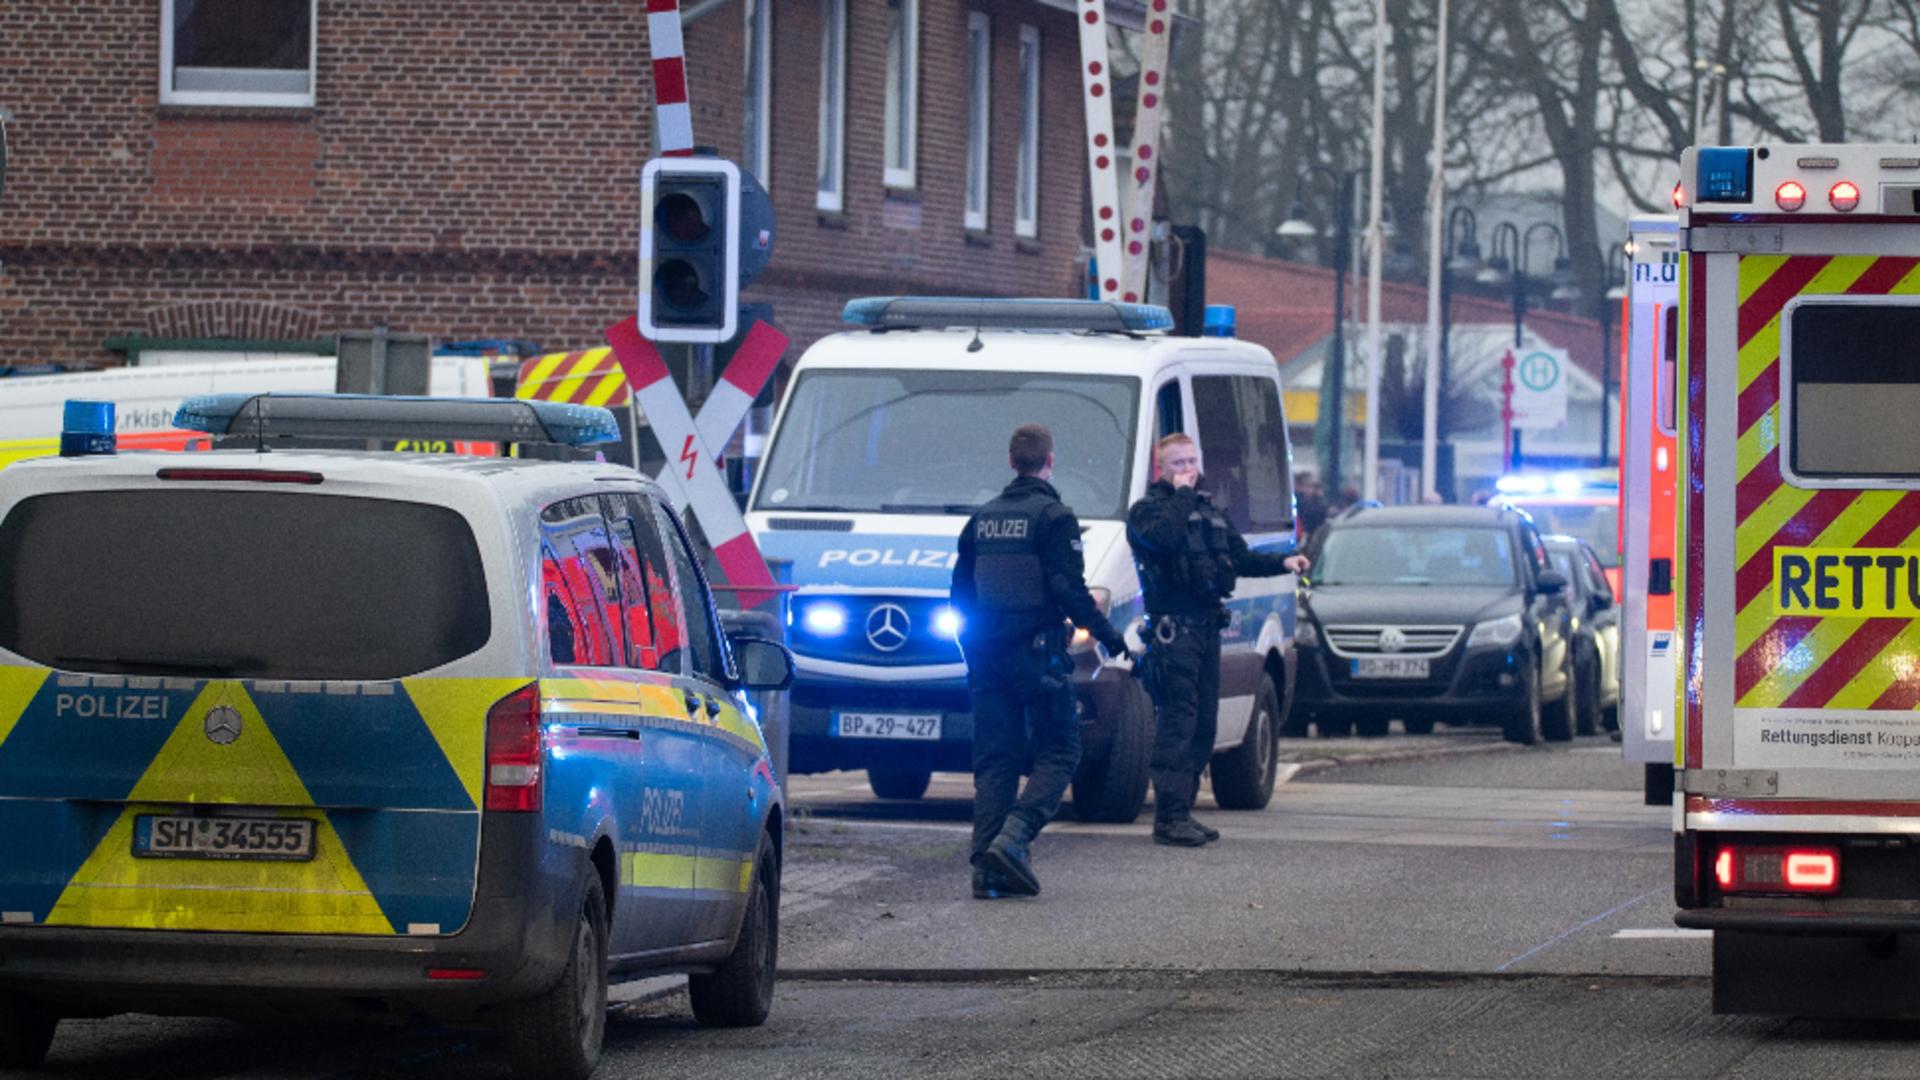 Cel puțin 2 oameniau murit în urma atacului cu cuțitul într-un tren din Germania. Foto/Profimedia